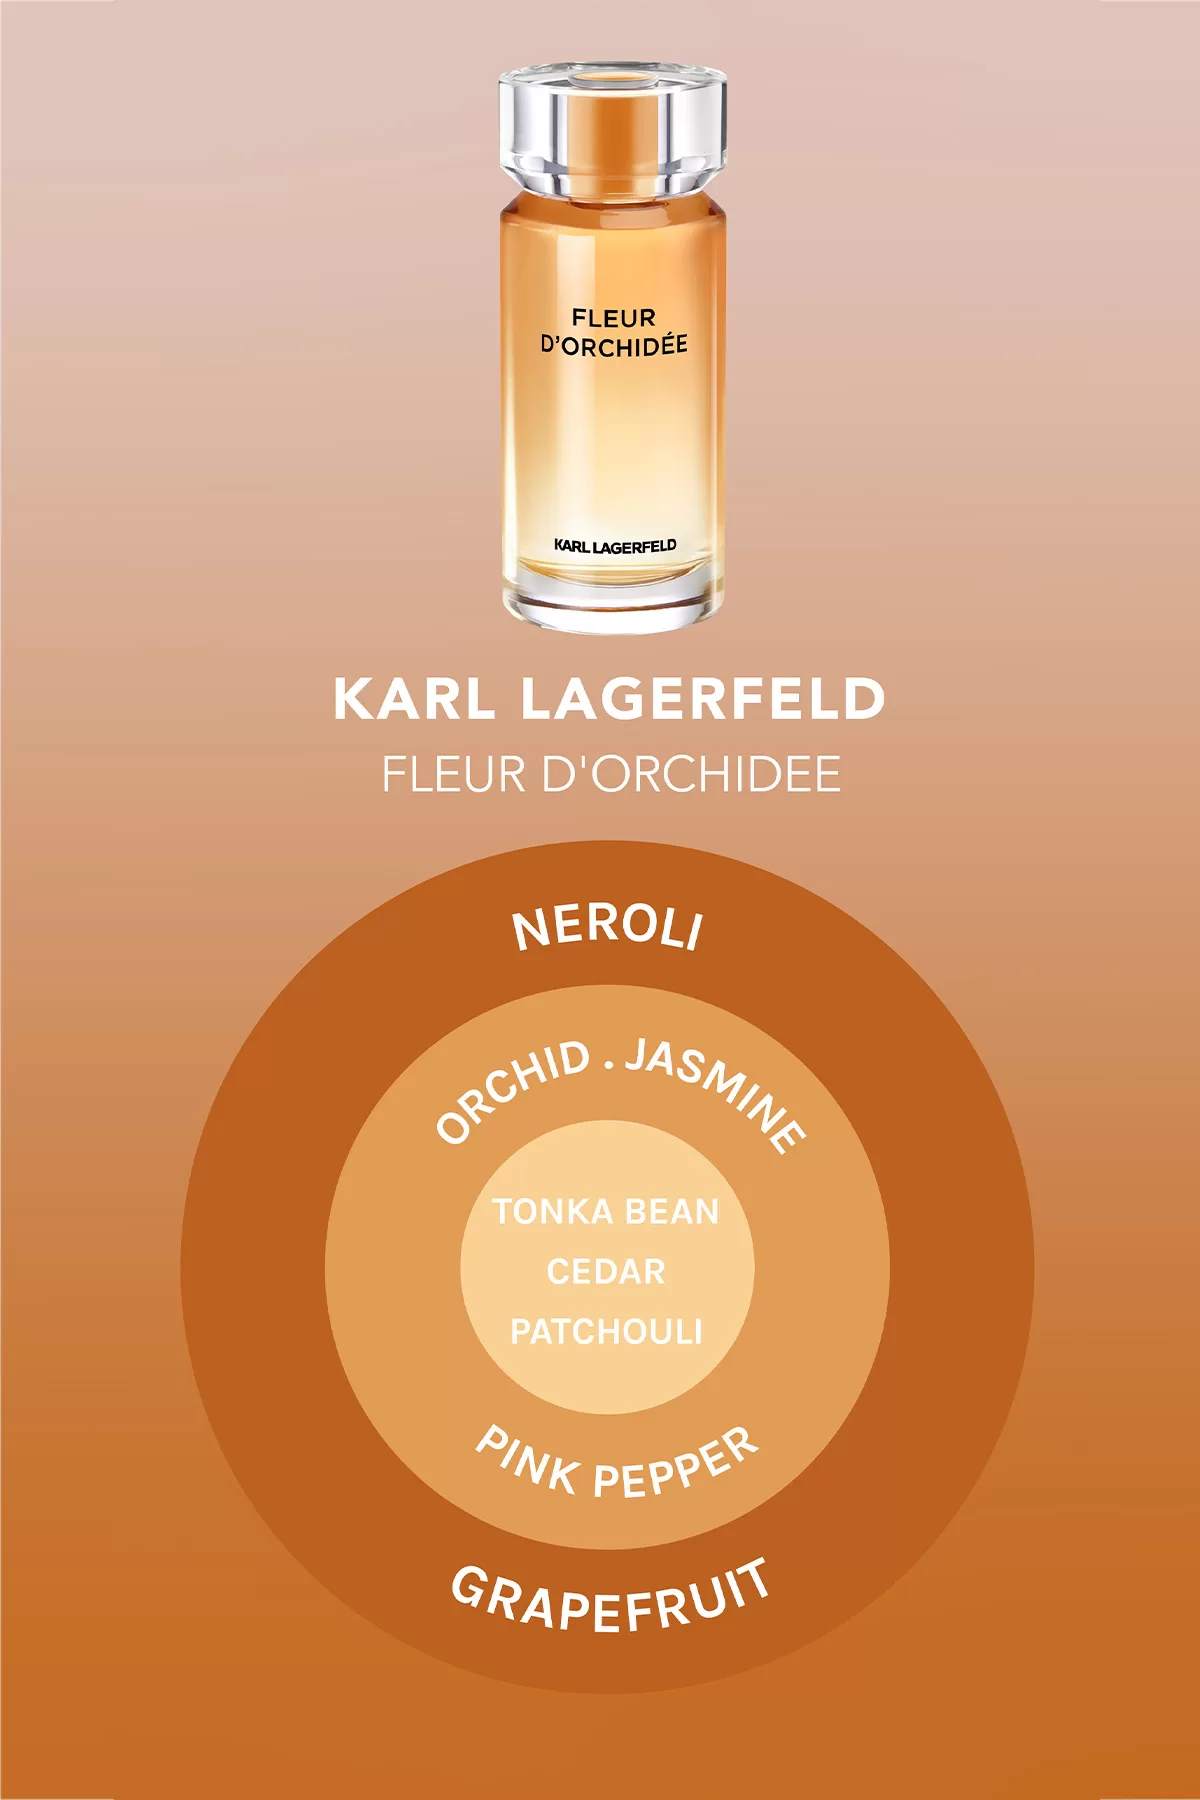 Karl Lagerfeld Fleur d’Orchidée